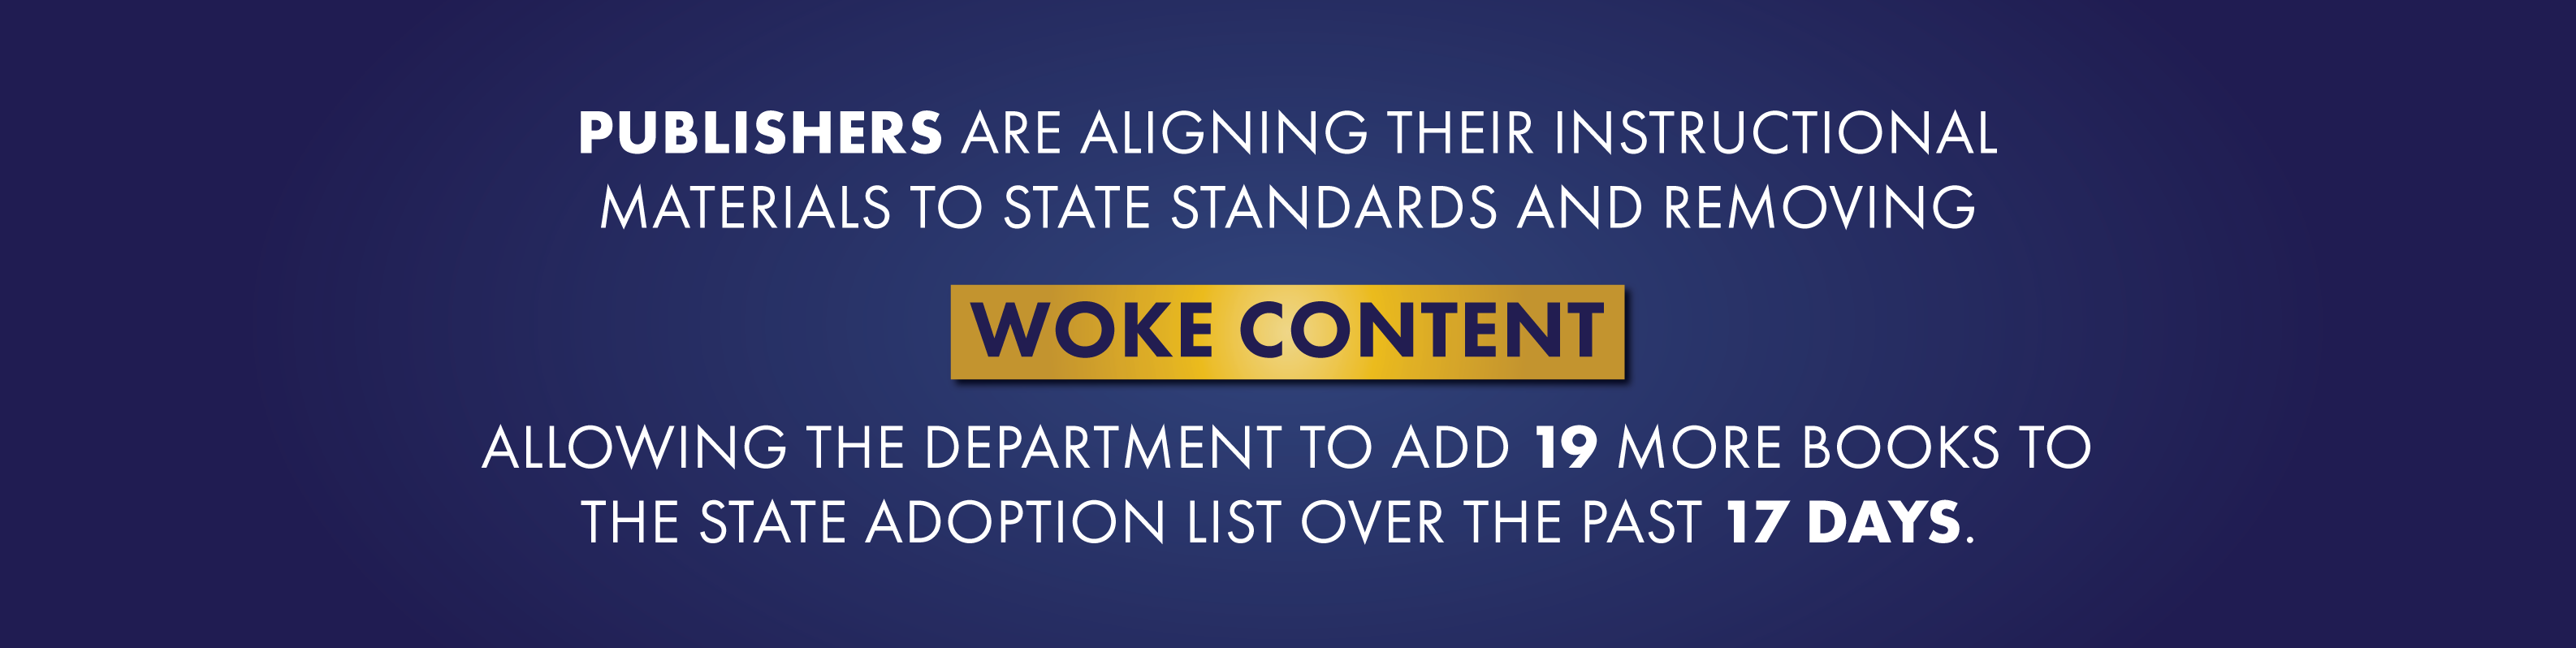 Los editores están alineando sus materiales didácticos con los estándares estatales y eliminando el contenido despertado, lo que le permite al departamento agregar 19 libros más a la lista de adopción estatal en los últimos 17 días.